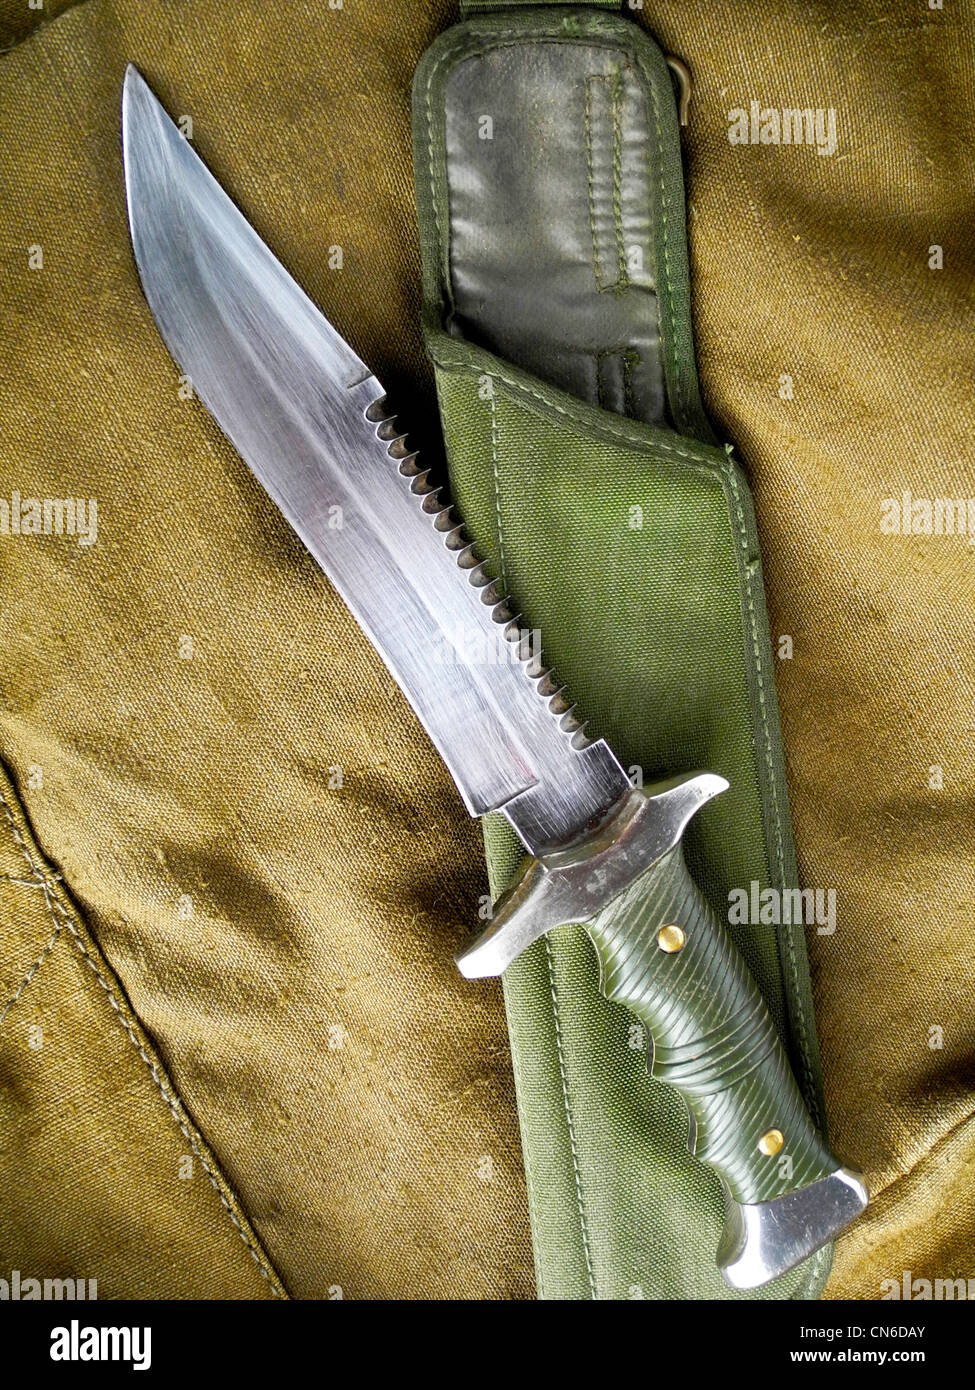 Un cuchillo militar de combate utilizado como arma de combate. Foto de stock